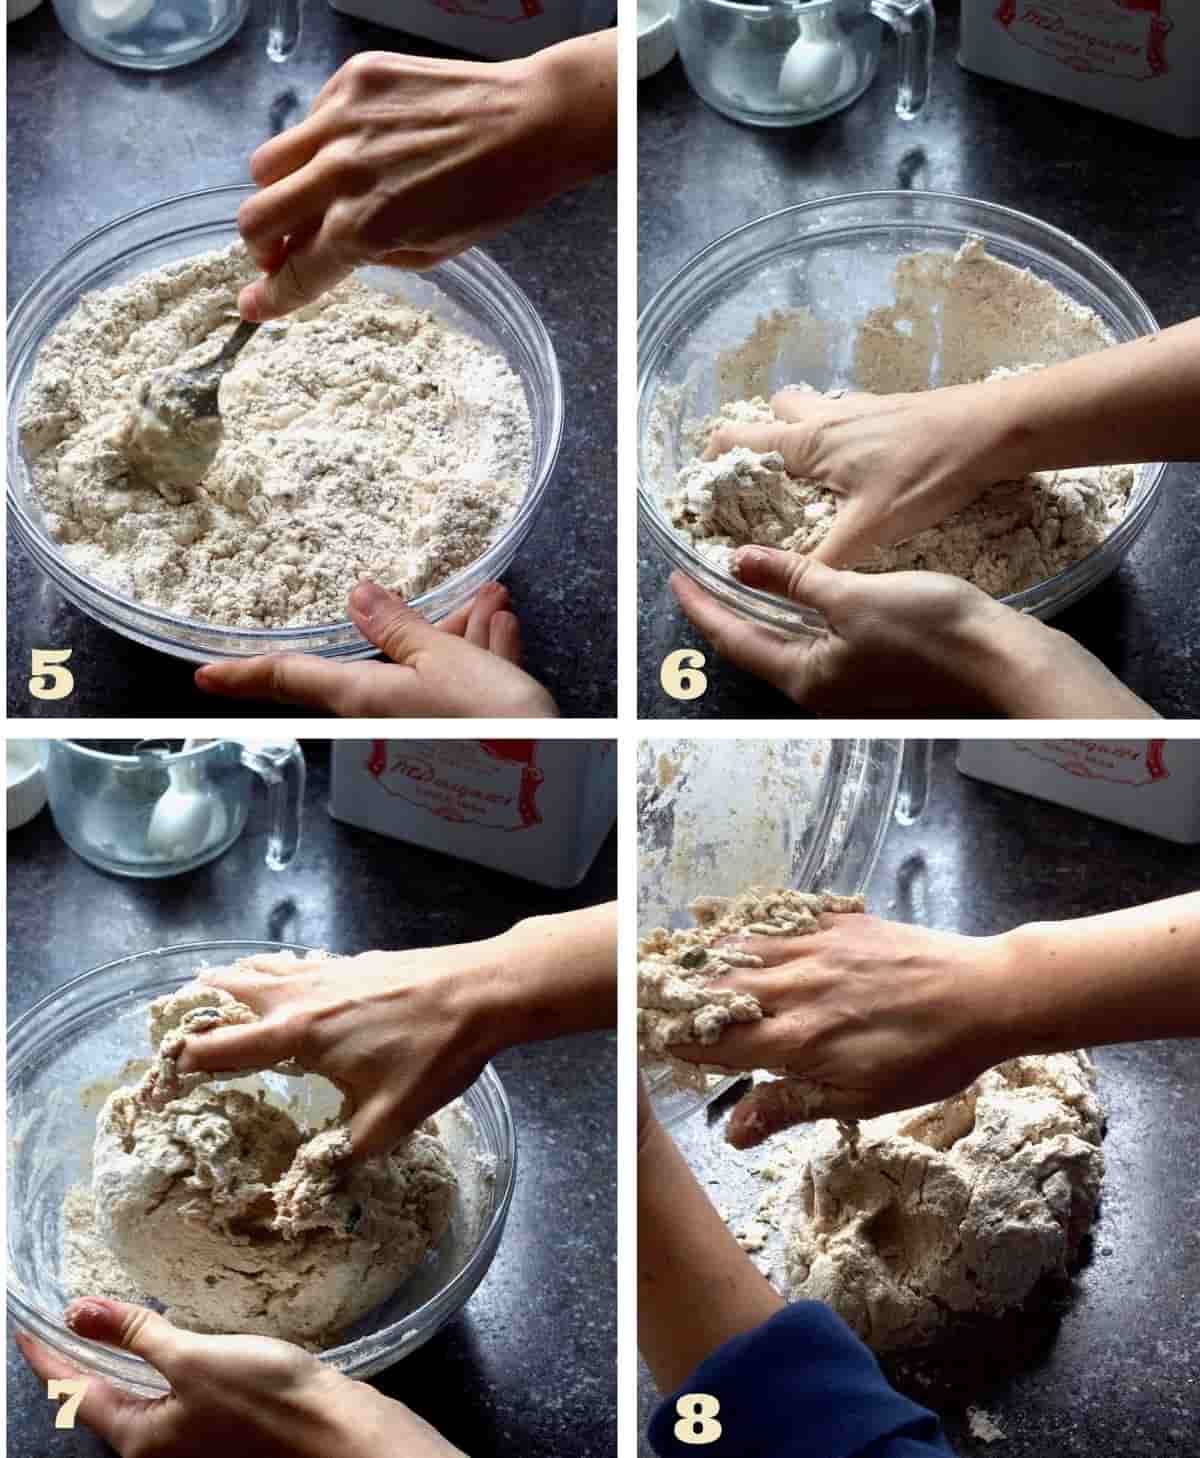 Preparation of dough for vegan soda bread.